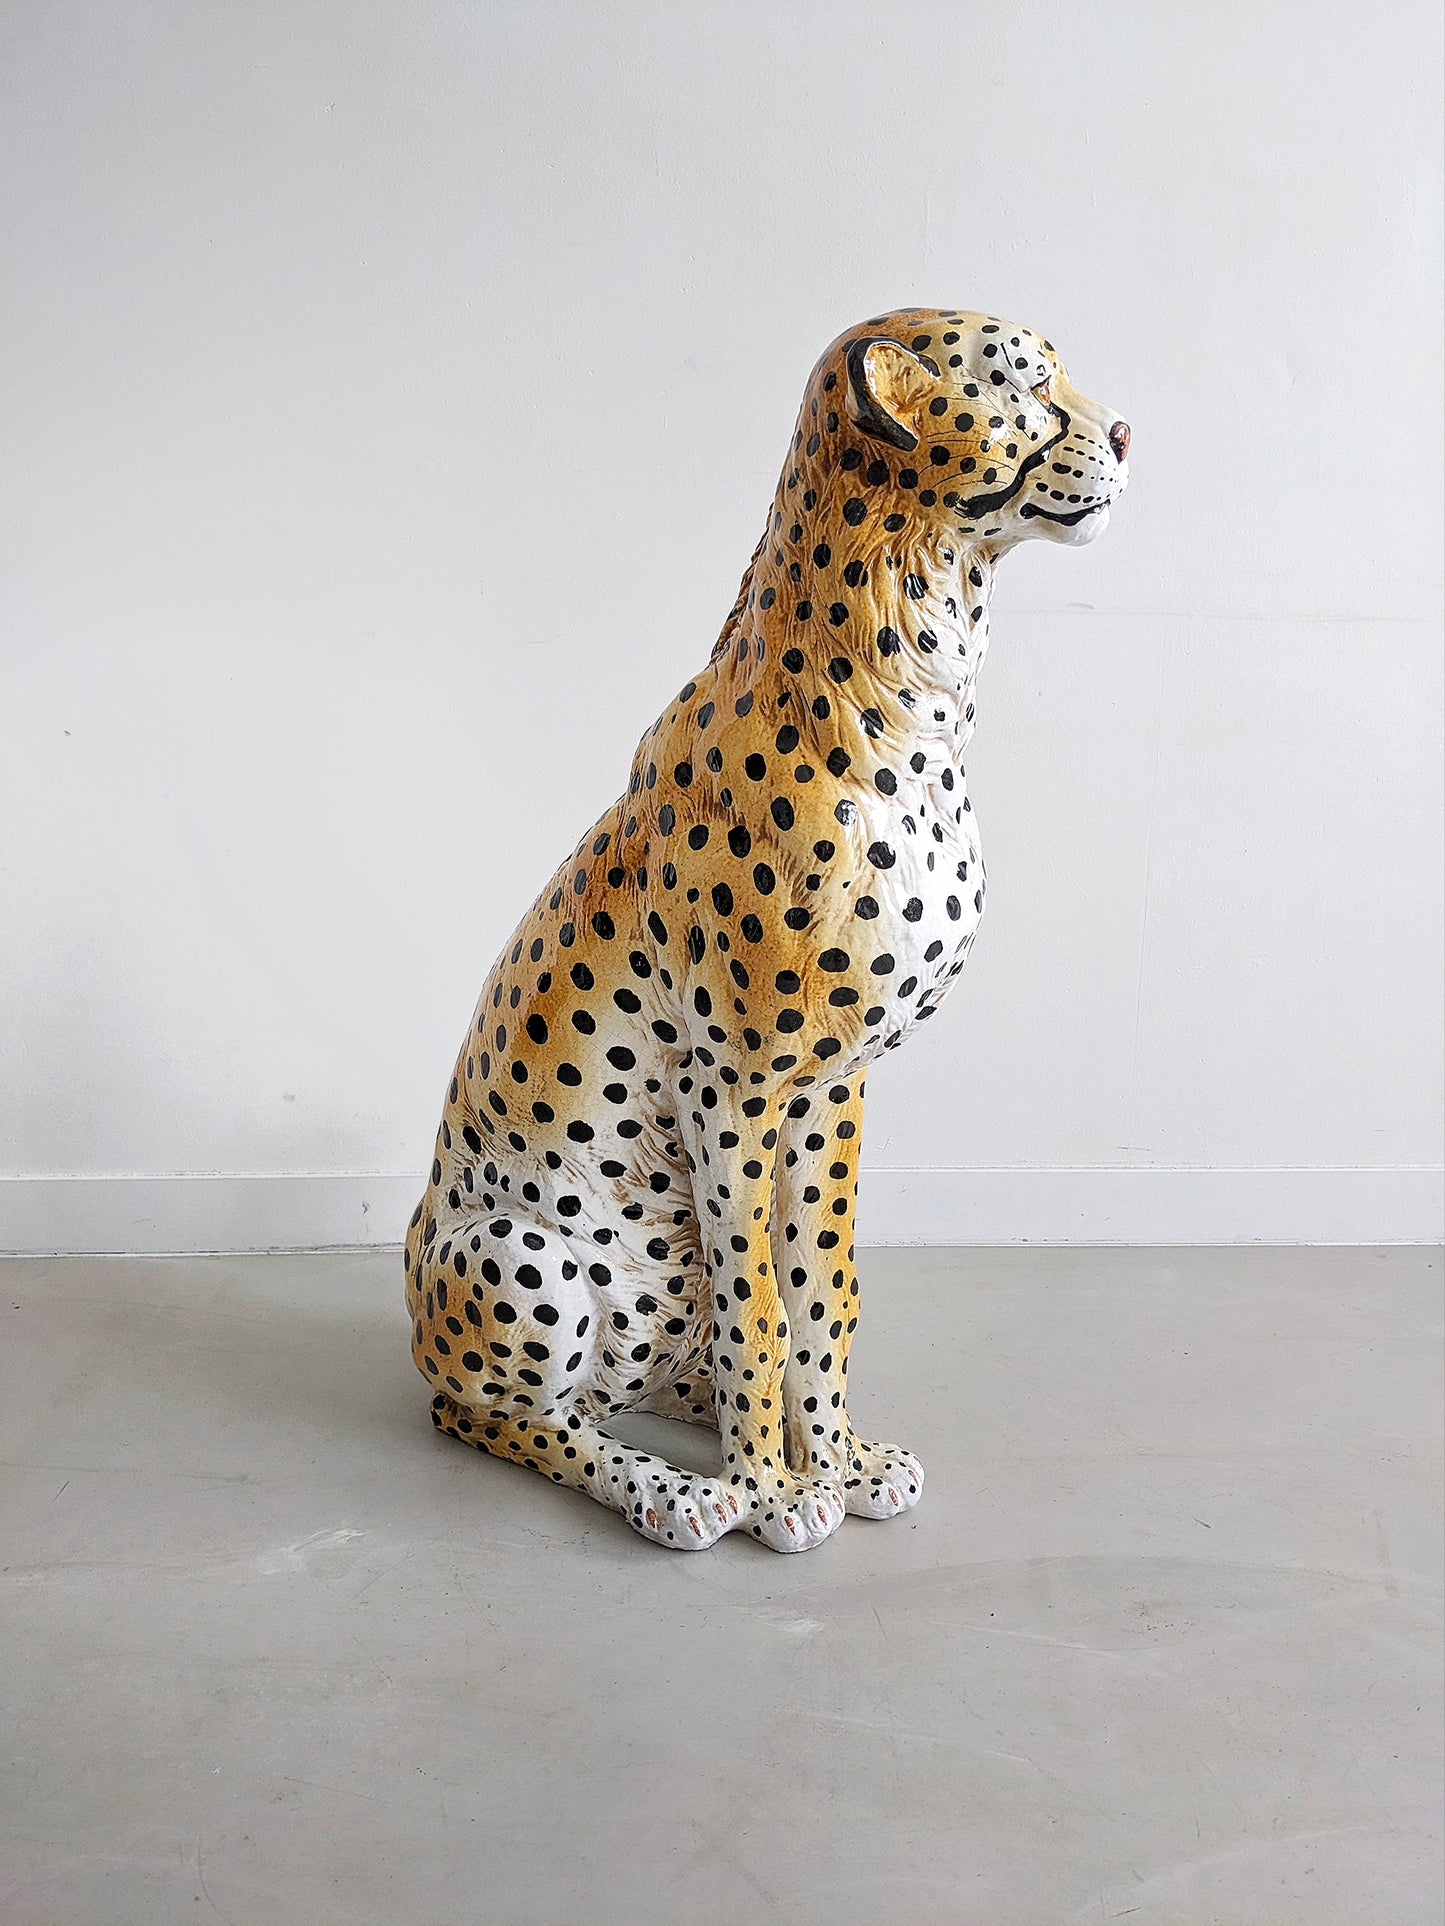 XL Ceramic Leopard Statue 1960's